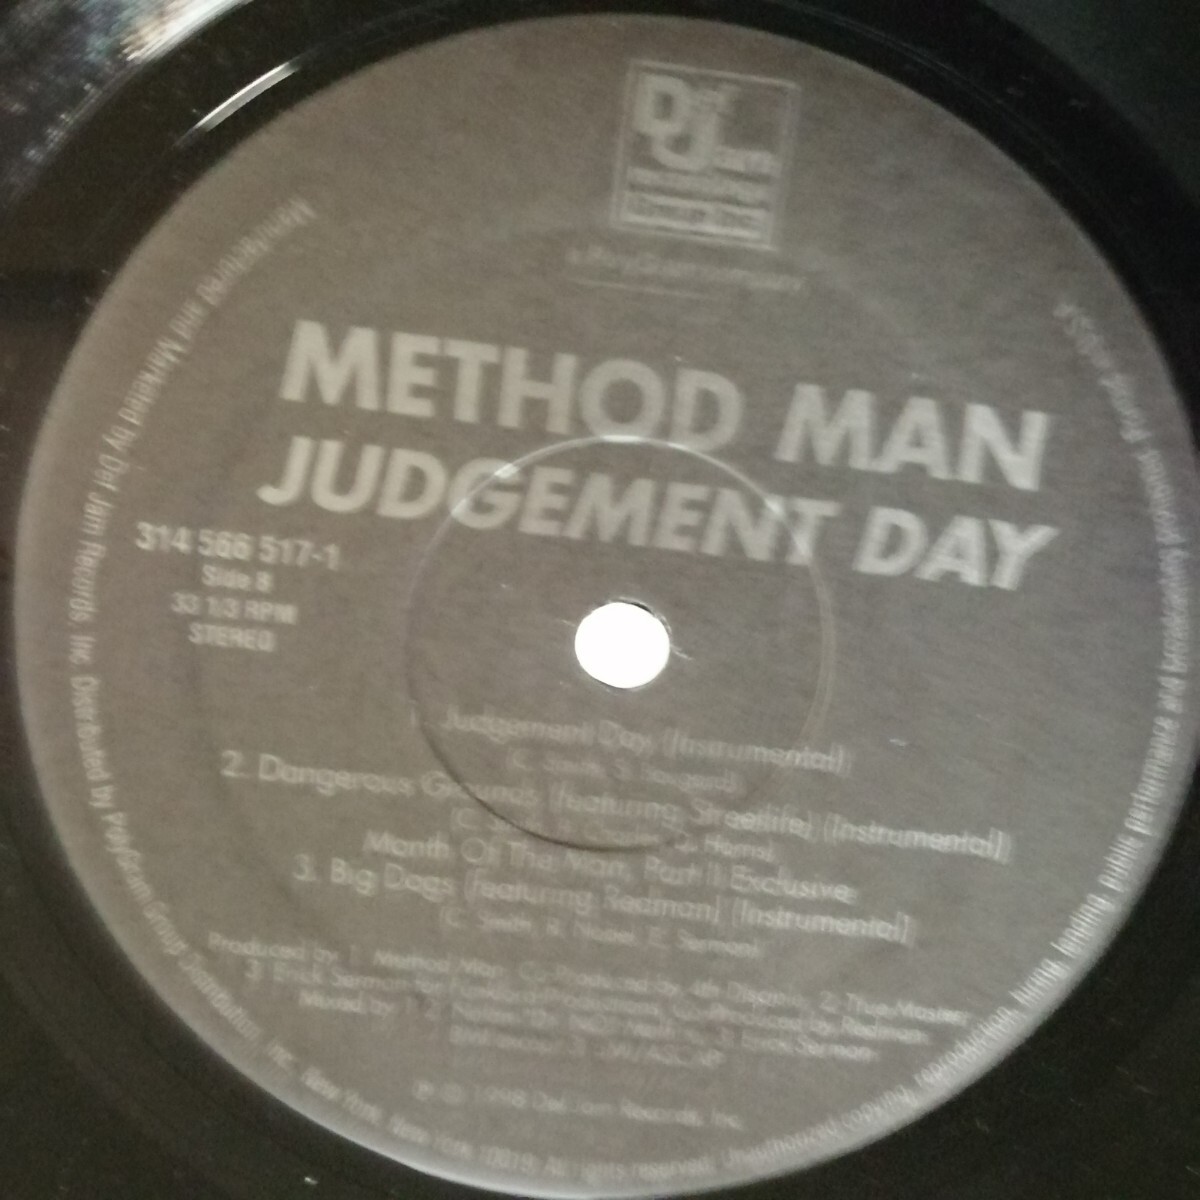 D04 中古LP 中古レコード　METHOD MAN judgement day US盤314 565 517-1 シュリンク、ハイプシールあり　TICAL 2000_画像5